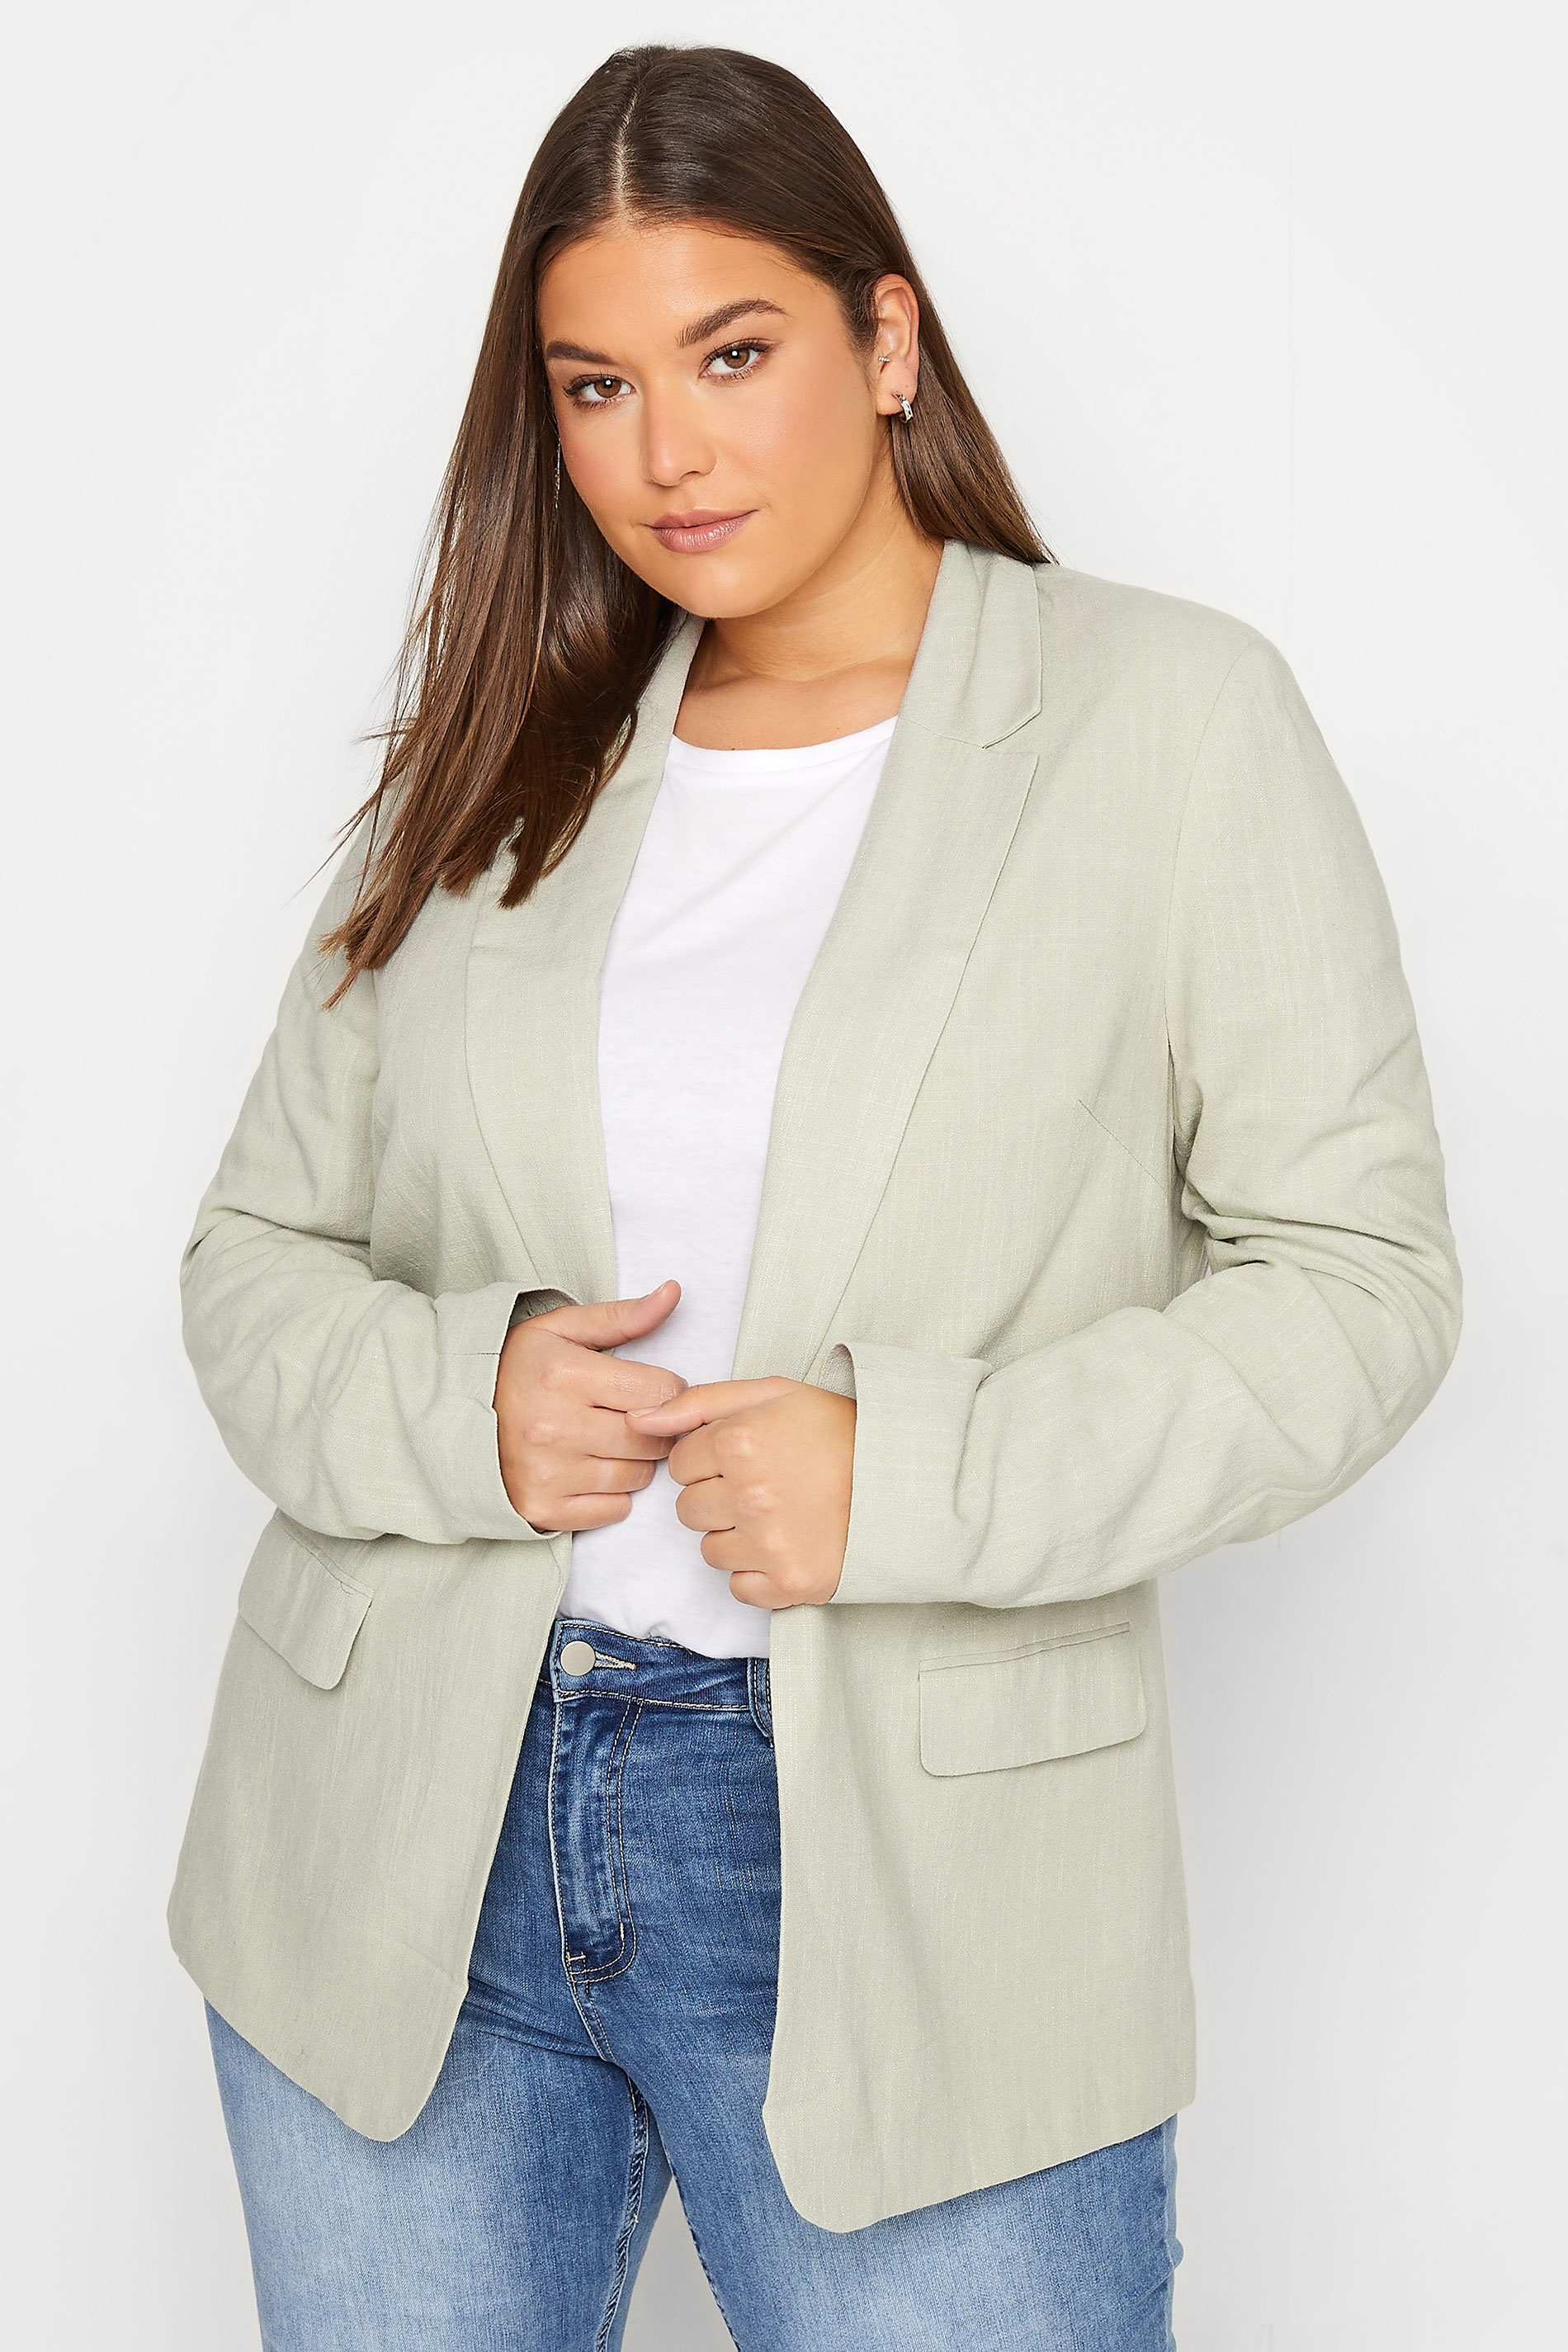 LTS Tall Women's Sage Green Linen Look Blazer | Long Tall Sally  1